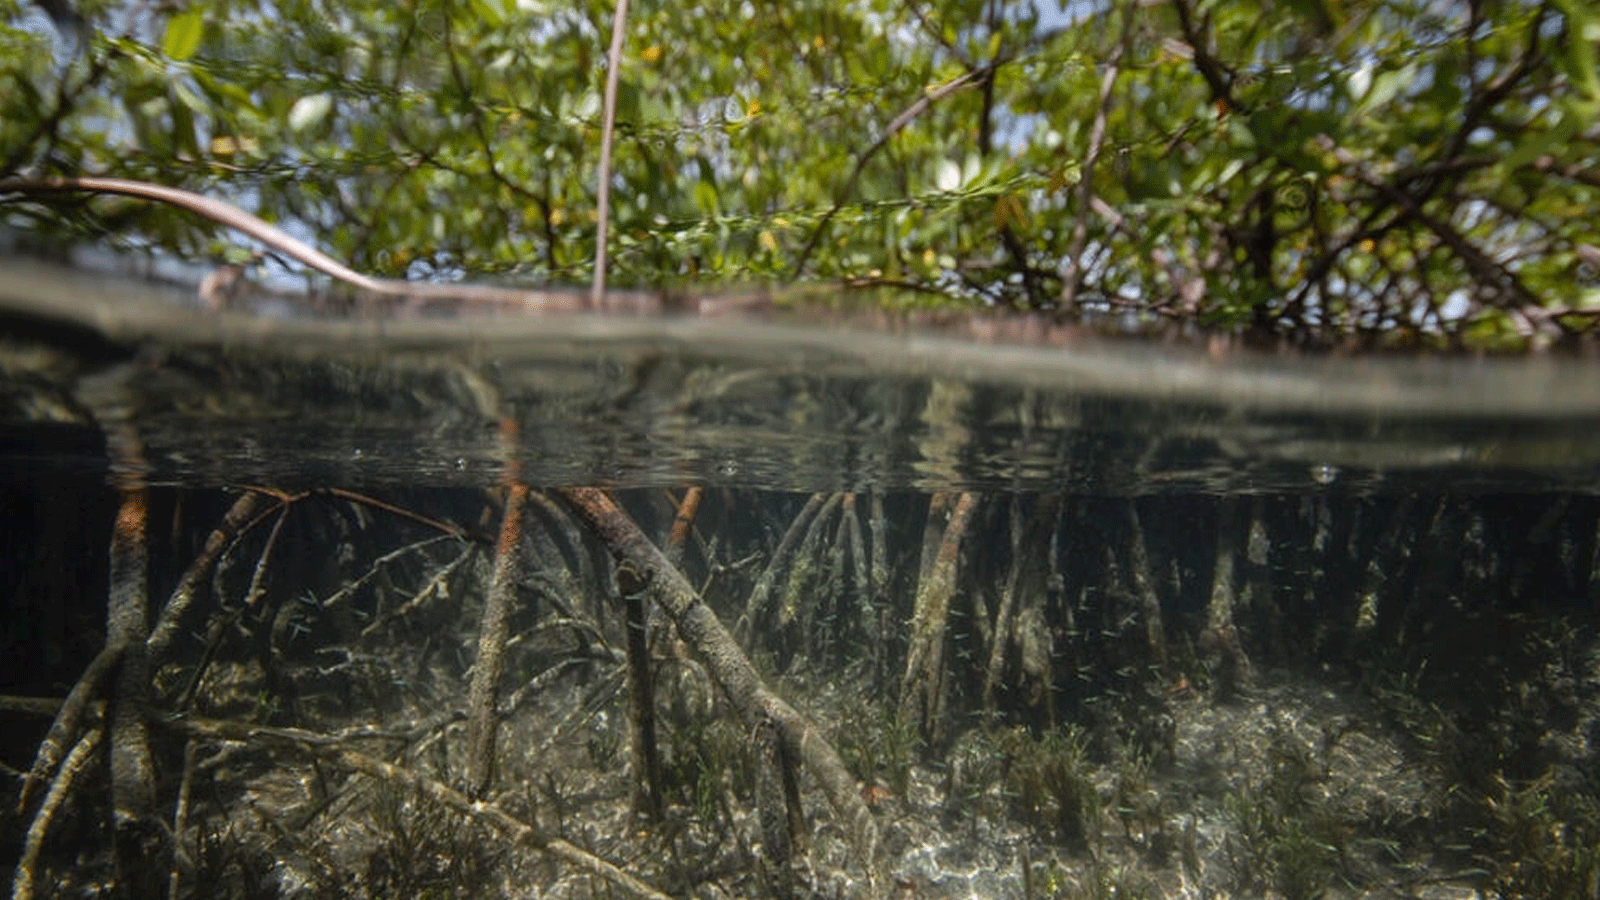 العلماء اكتشفوا أكبر مجموعة متنوعة من البكتيريا في العالم في غابات المانغروف في غوادلوب، في هذه الصورة من مختبر لورانس بيركلي الوطني 